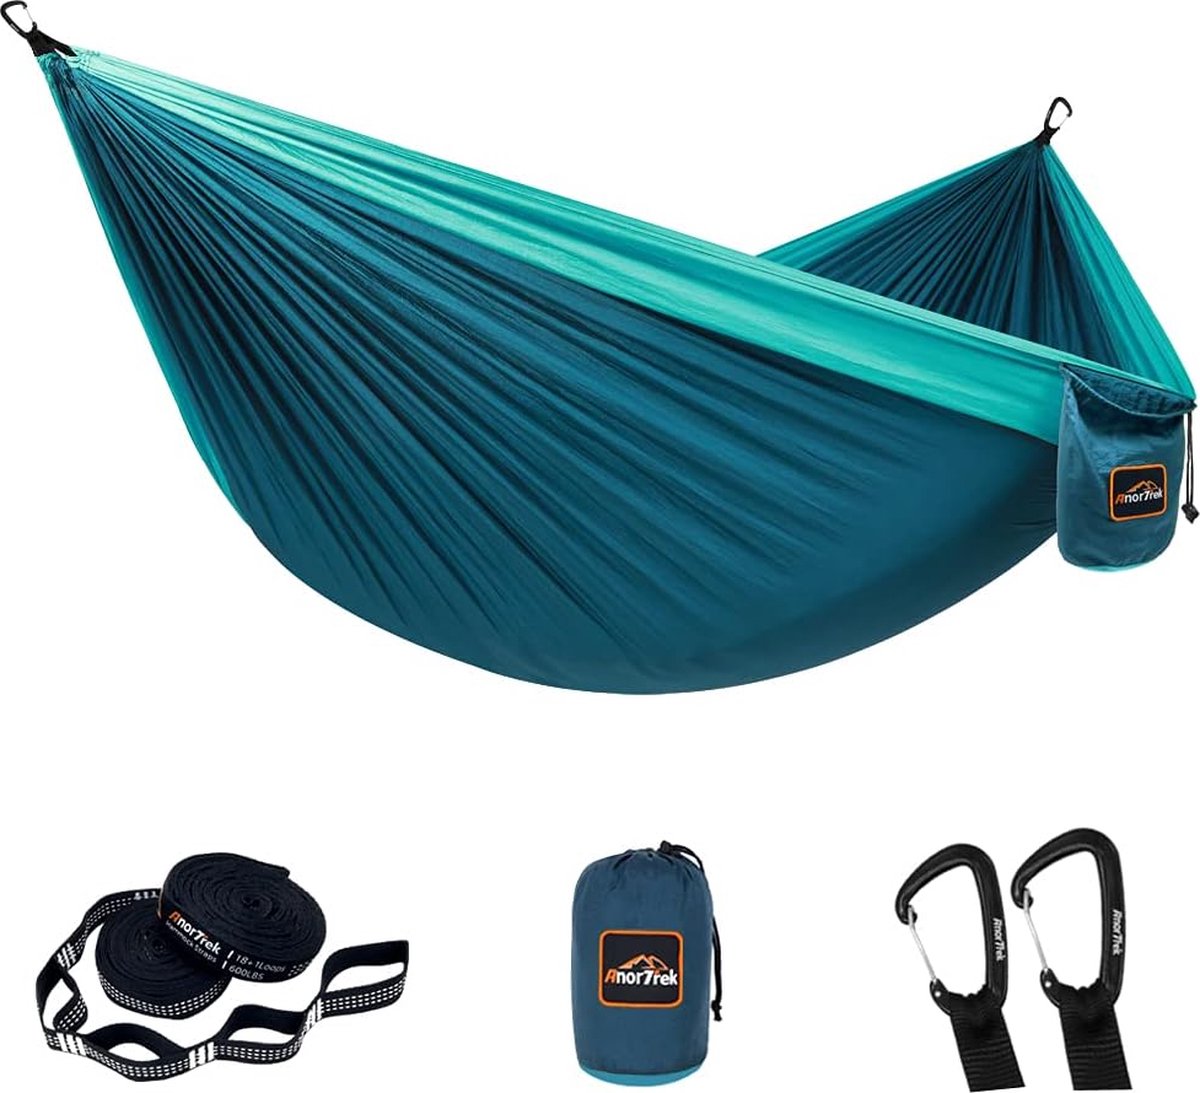 Campinghangmat, dubbele of enkele parachutehangmat met twee boombanden, lichtgewicht draagbare hangmat voor kamperen, wandelen, backpacken (0682604541938)